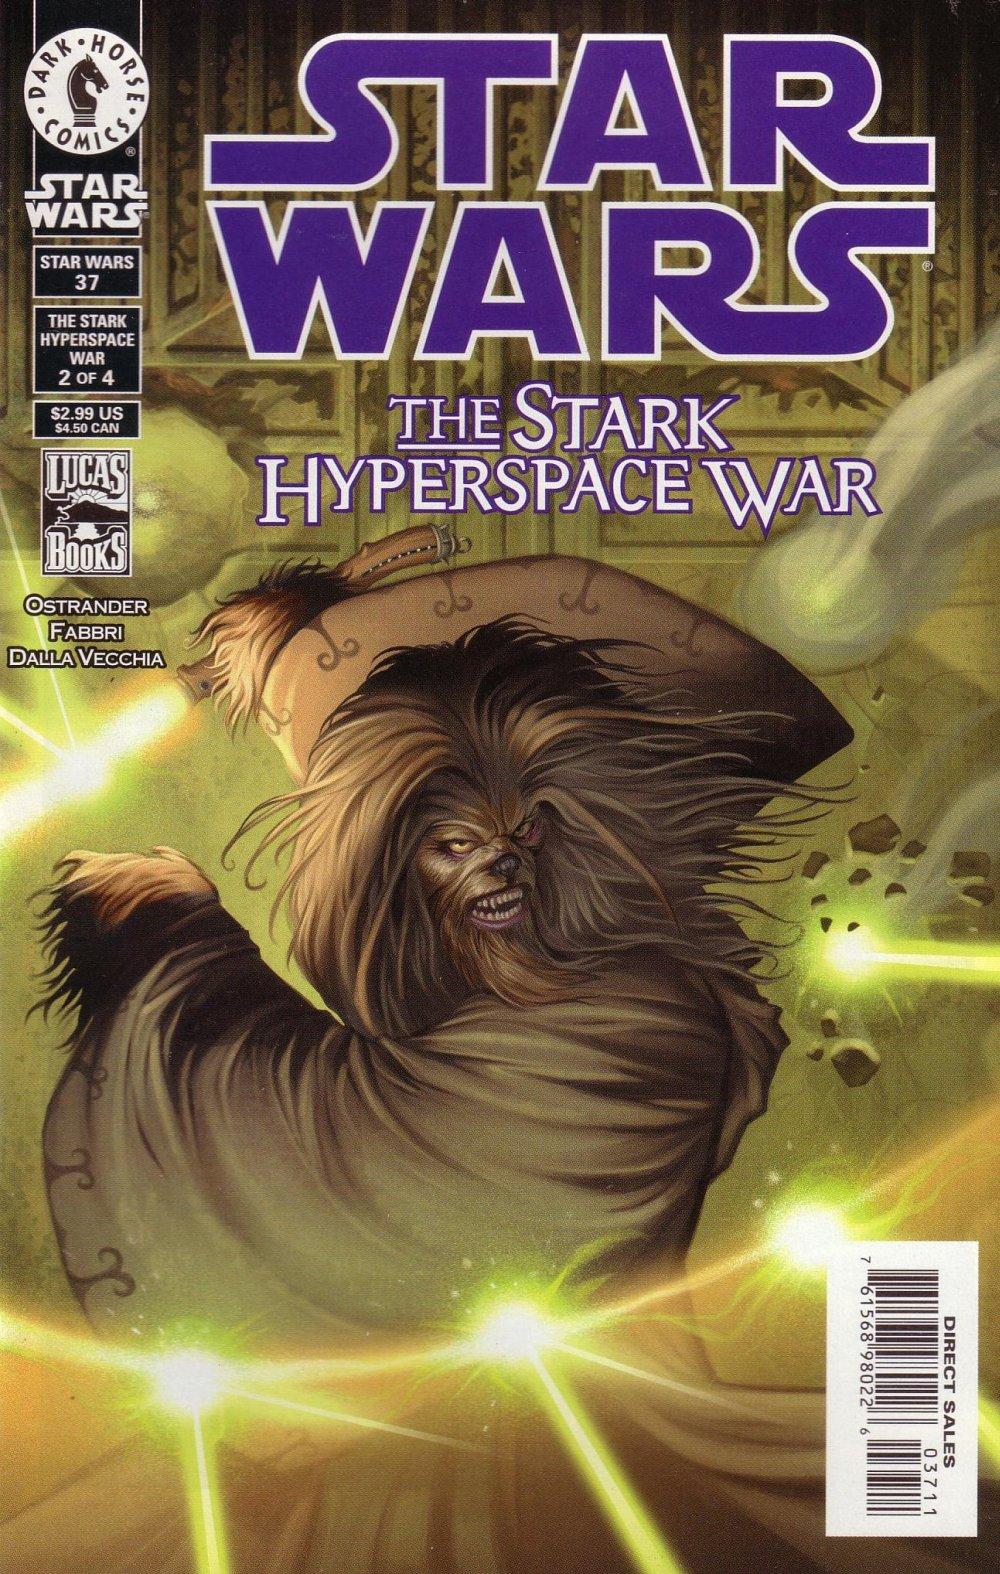 Star Wars: Republic Vol. 1 #37